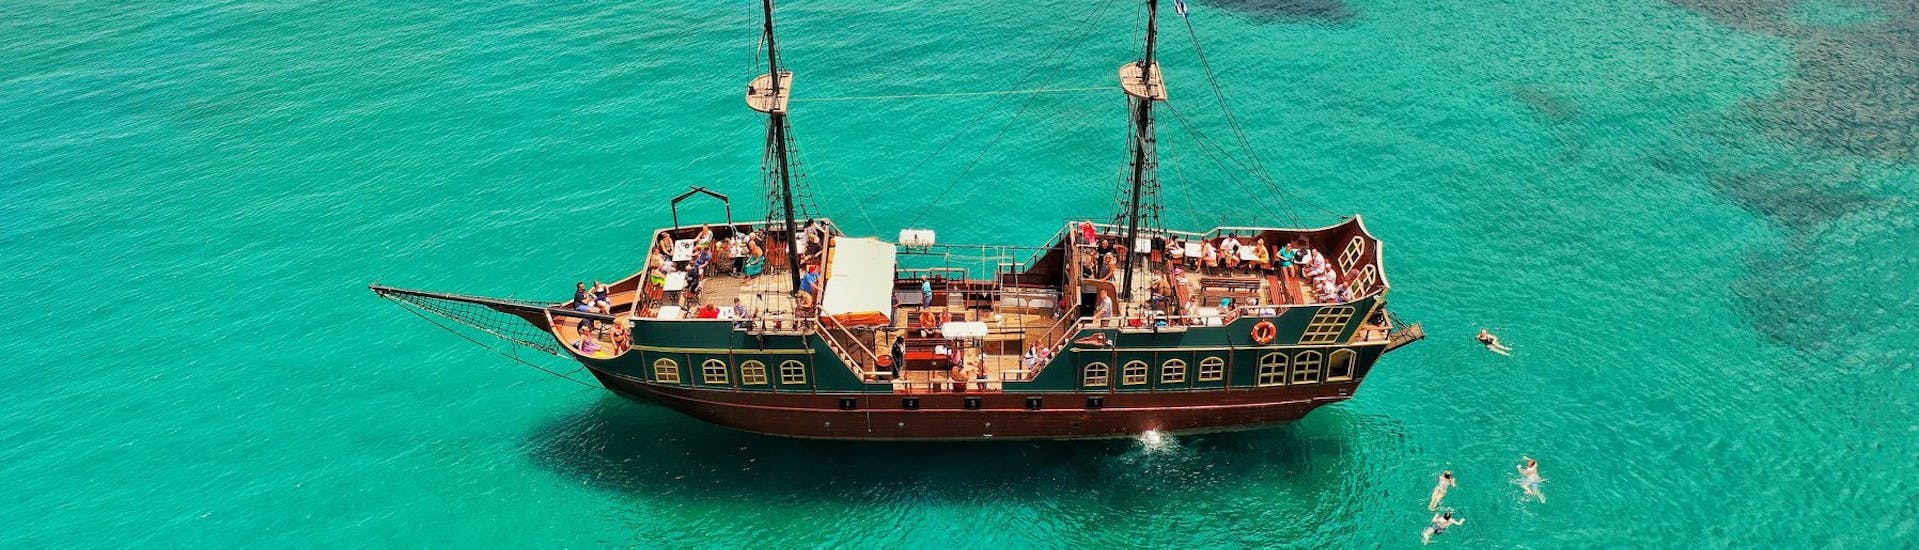 Vista aérea de nuestro barco pirata durante la excursión en barco pirata a Malia y Stalis con almuerzo y buceo con Pirates of Crete.